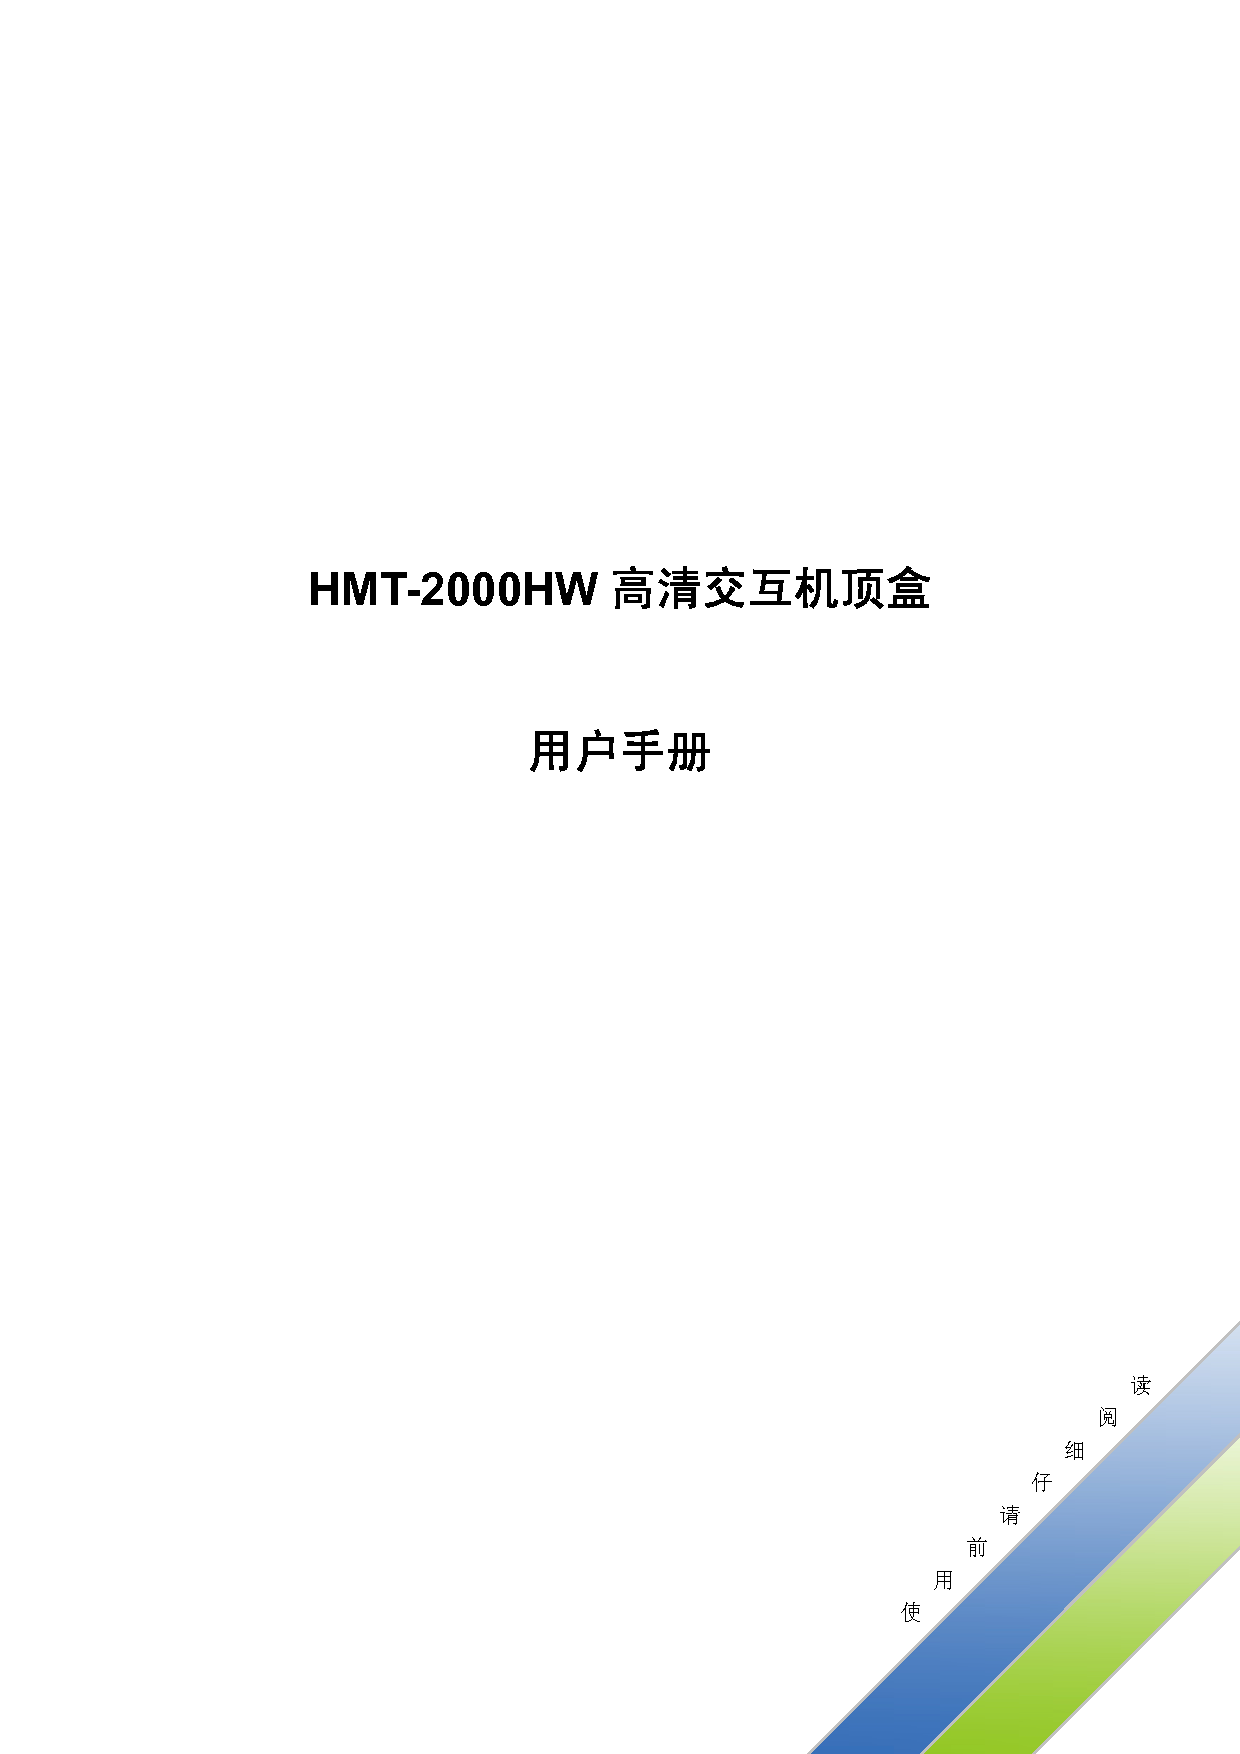 歌华 Gehua HMT-2000HW 用户手册 封面